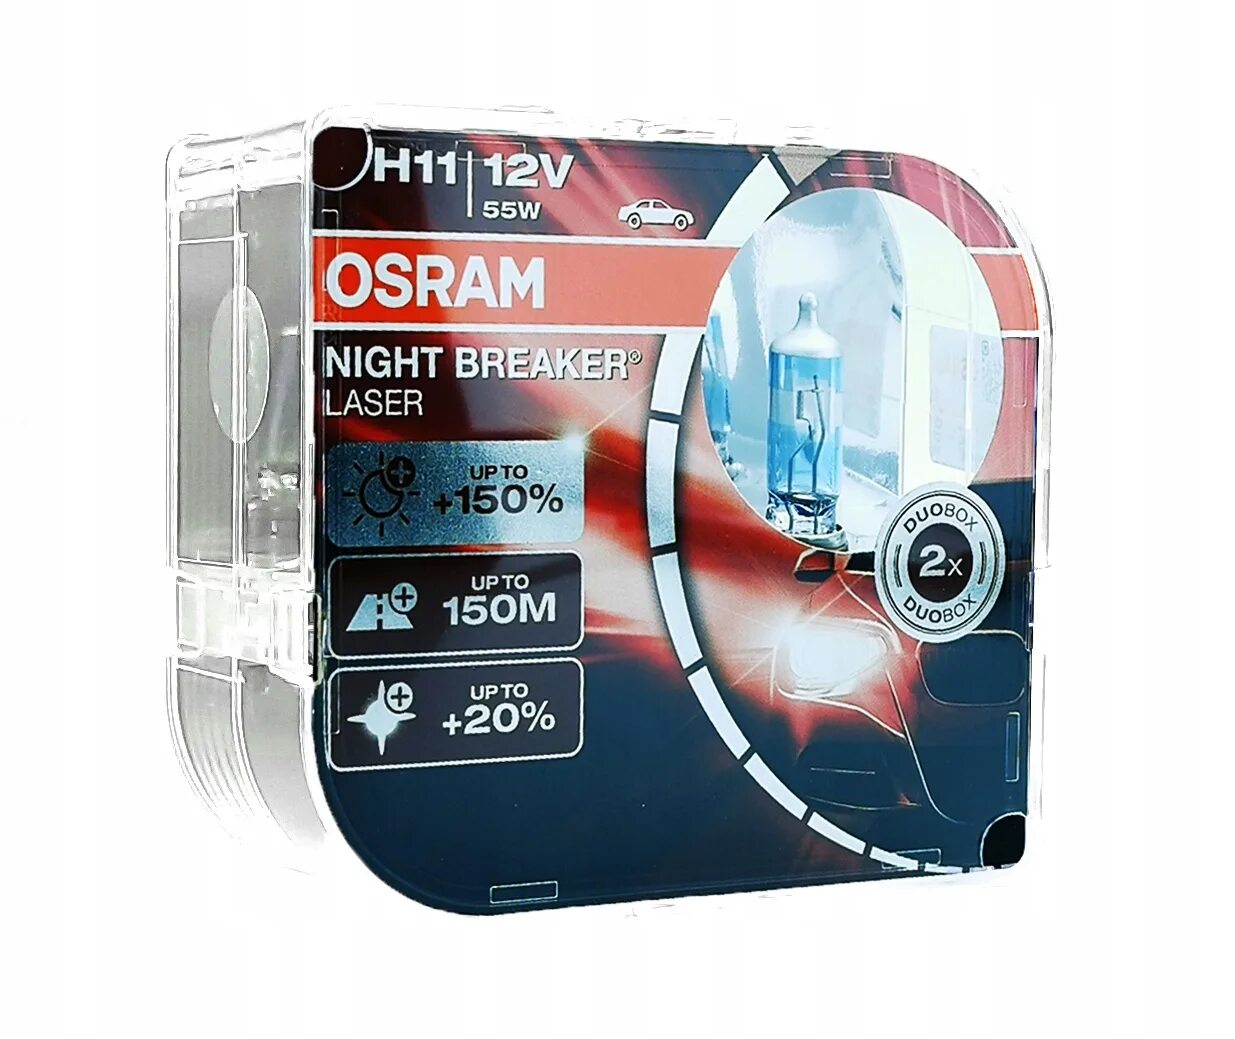 Osram Night Breaker Laser h11. Осрам Найт брекер h11 +150. Osram Night Breaker Lazer +150. Osram h11 Night Breaker Laser +150.